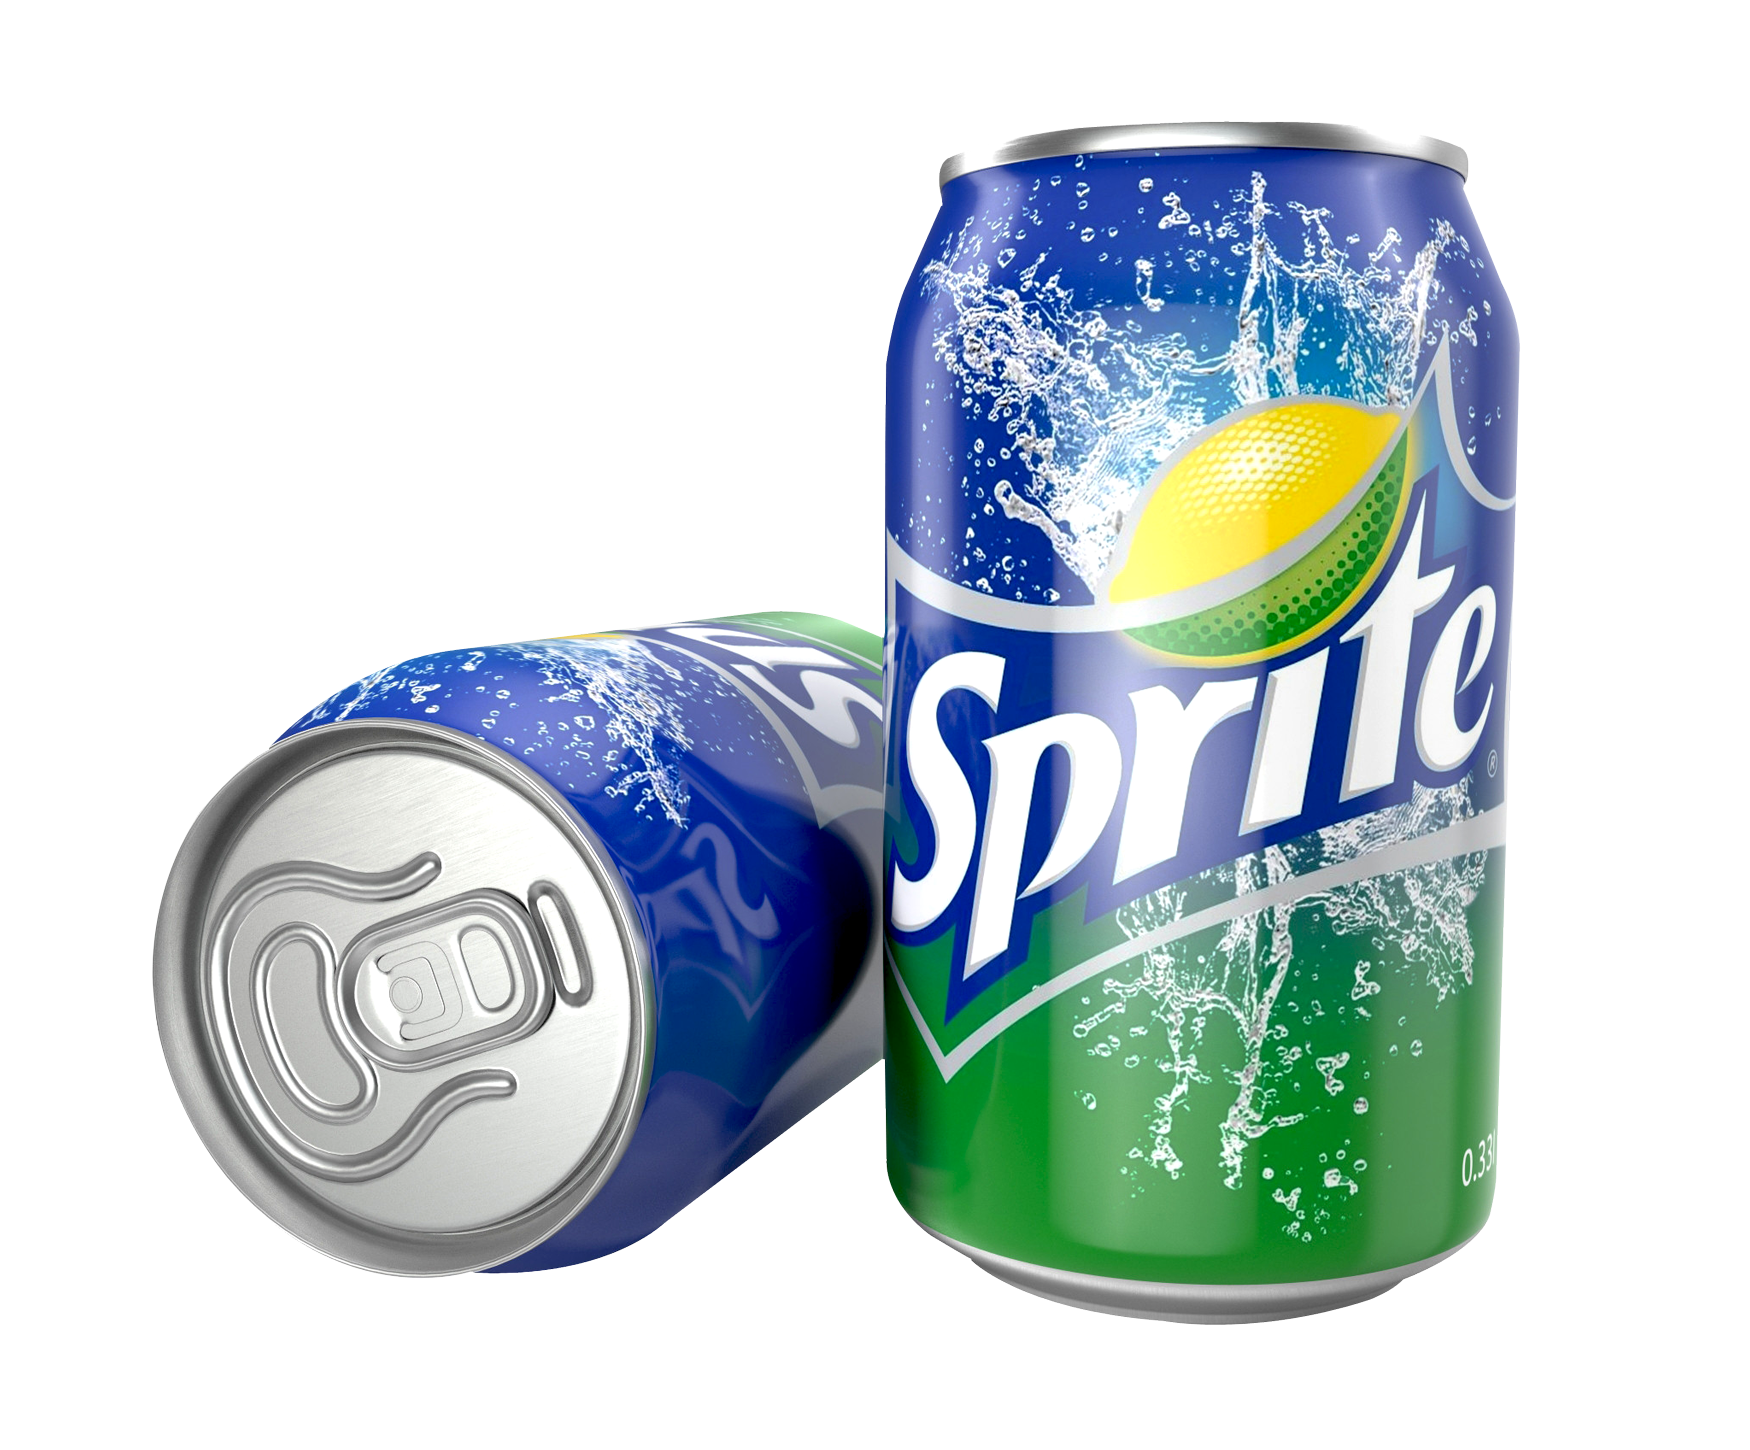 Sprite Soda Cans Splash PNG image